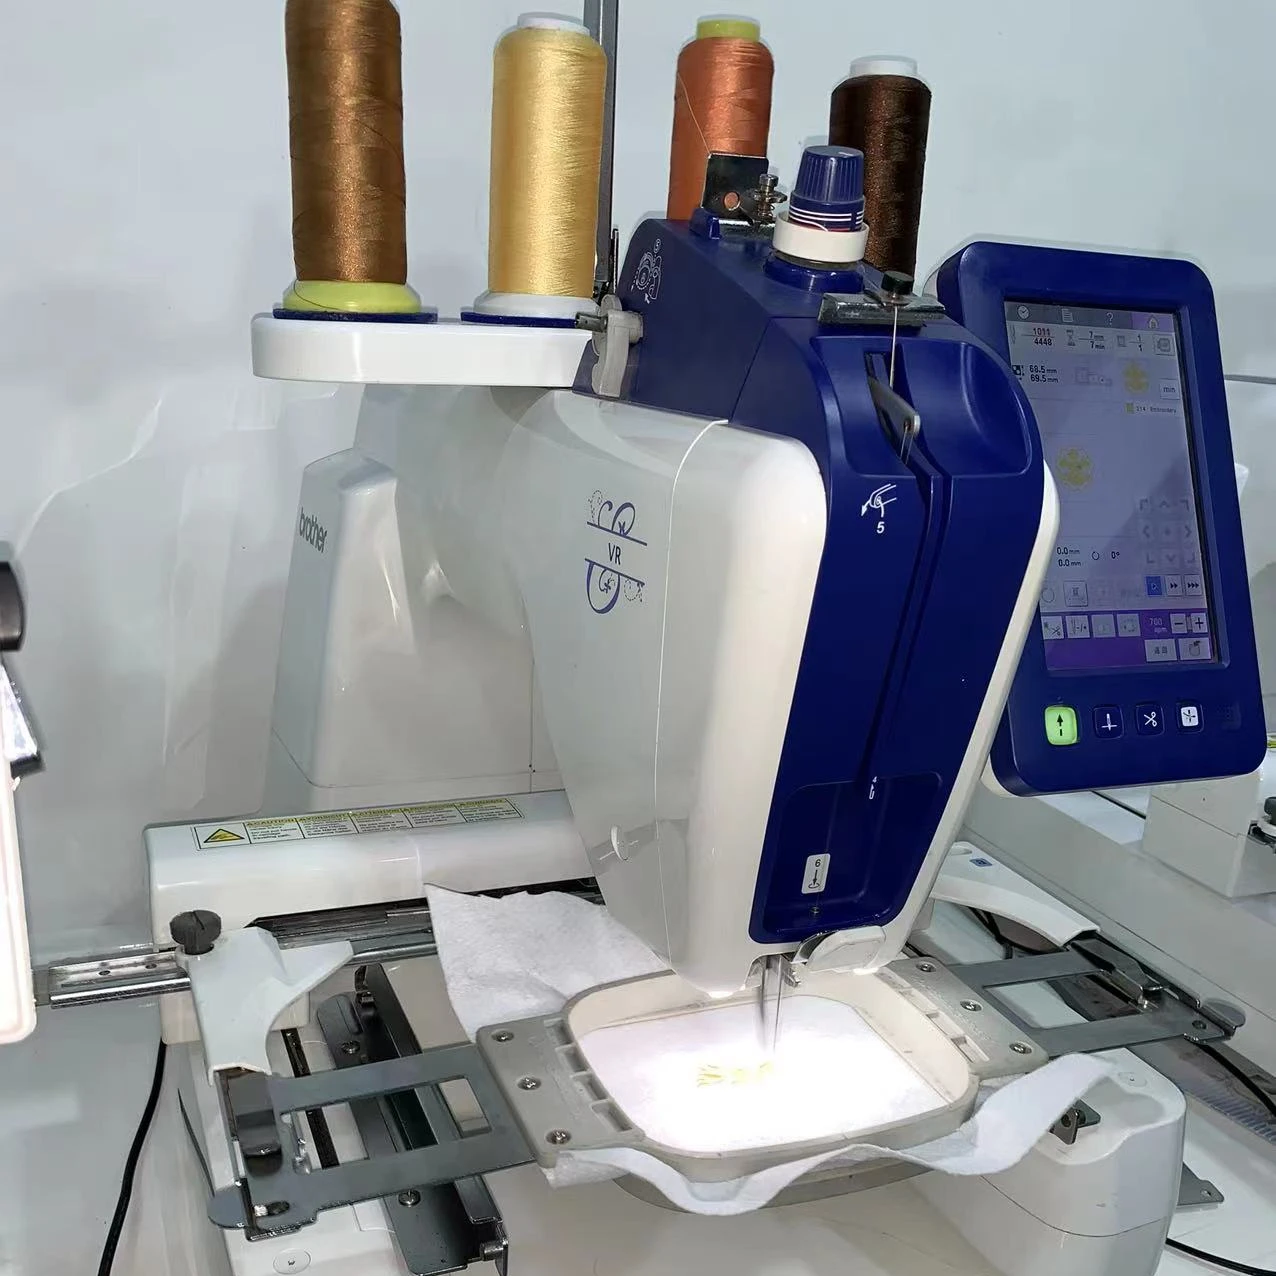 

Новая Компьютеризированная швейная вышивальная машина по цене ниже, чем у BrothAr Vr б/у